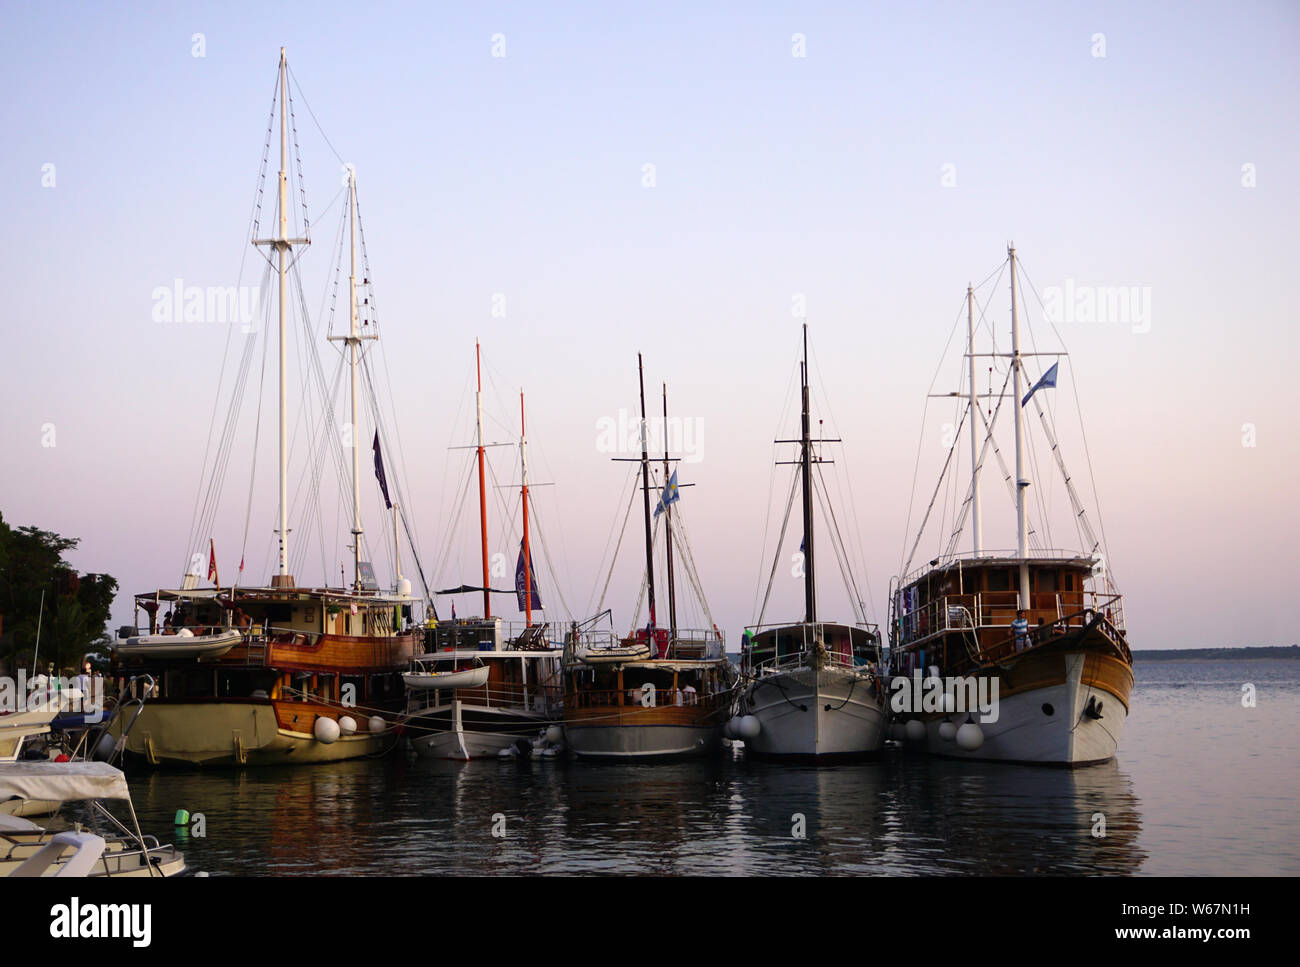 Mandre, île de Pag, Croatie, 29 juillet 2019. Les bateaux à voile touristique plein d'heureux touristes ancrés dans le port dans la soirée heure bleue Banque D'Images